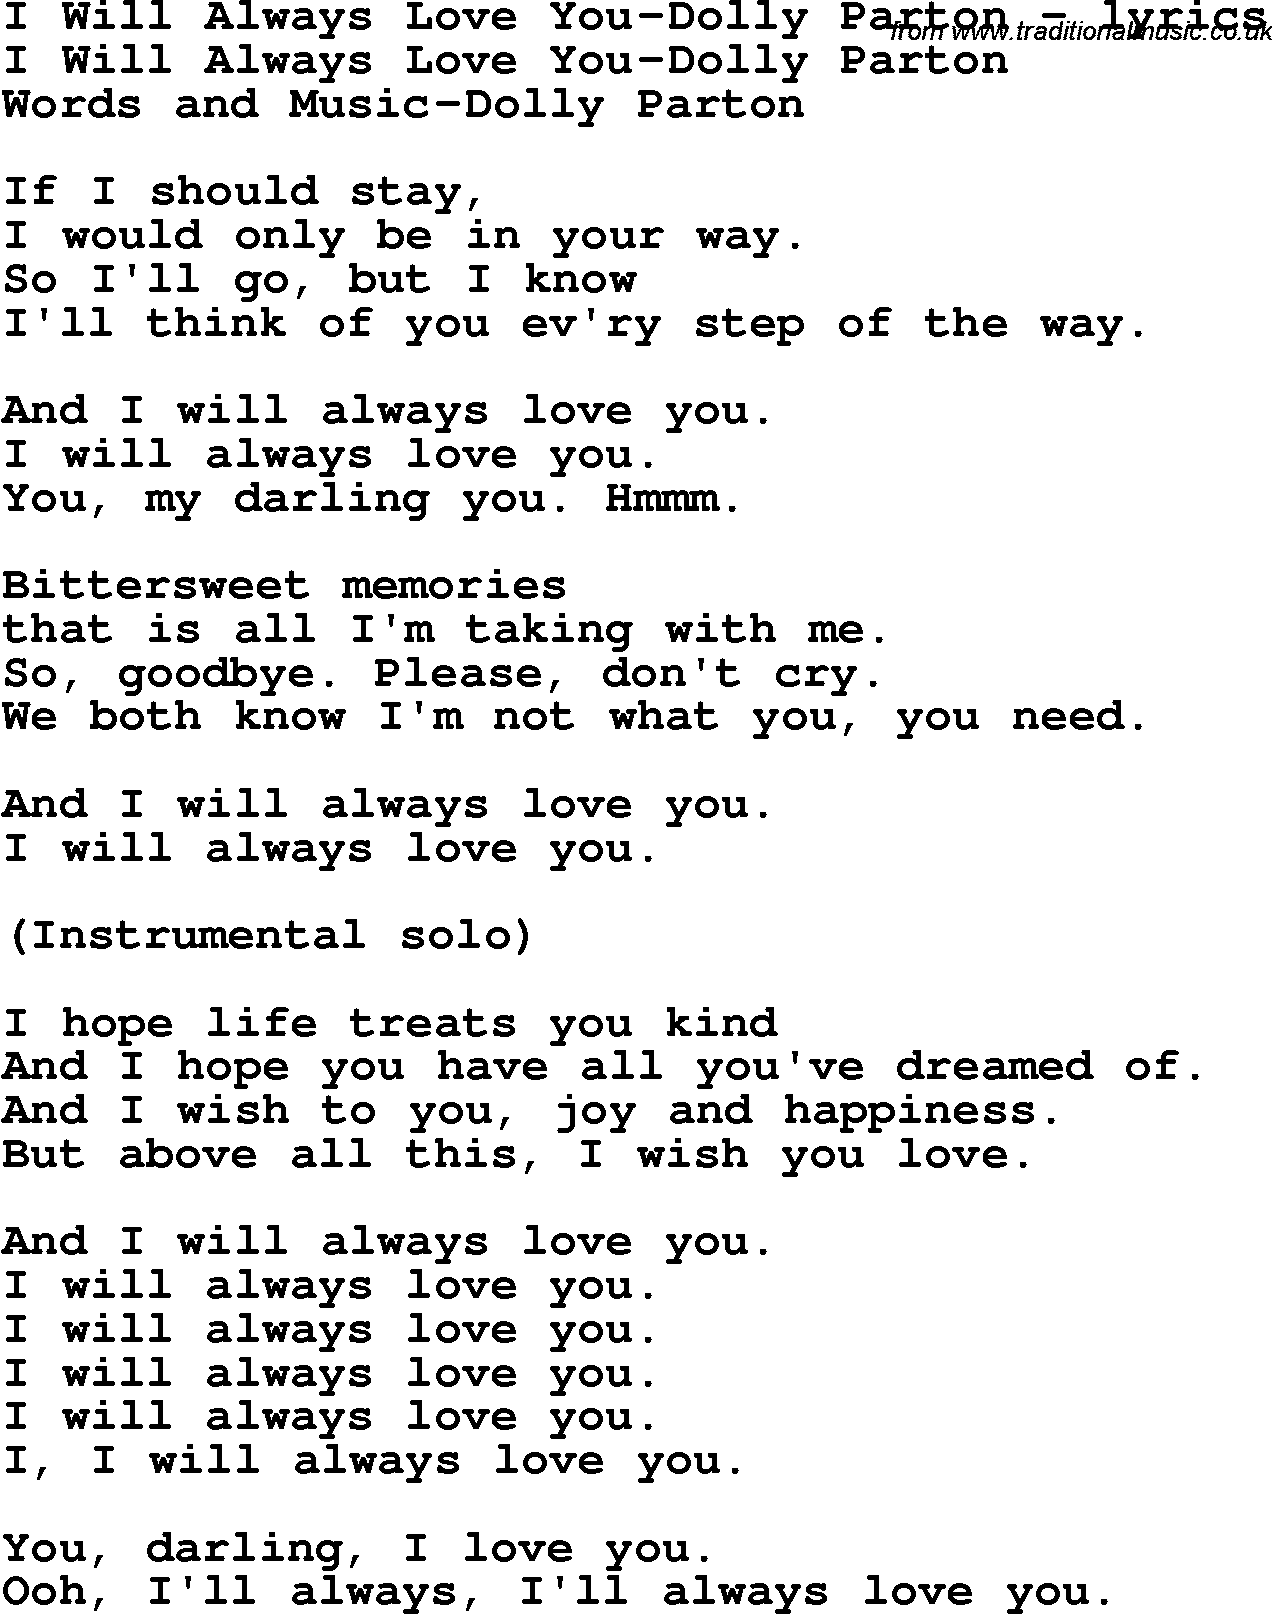 Love Song Lyrics For I Will Always Love You Dolly Parton In italian penso che un sogno cosi non ritorni mai piu mi dipingevo le mani e la faccia di blu poi d'improvviso venivo dal vento rapito e incominciavo a volare nel cielo infinito. traditional music library